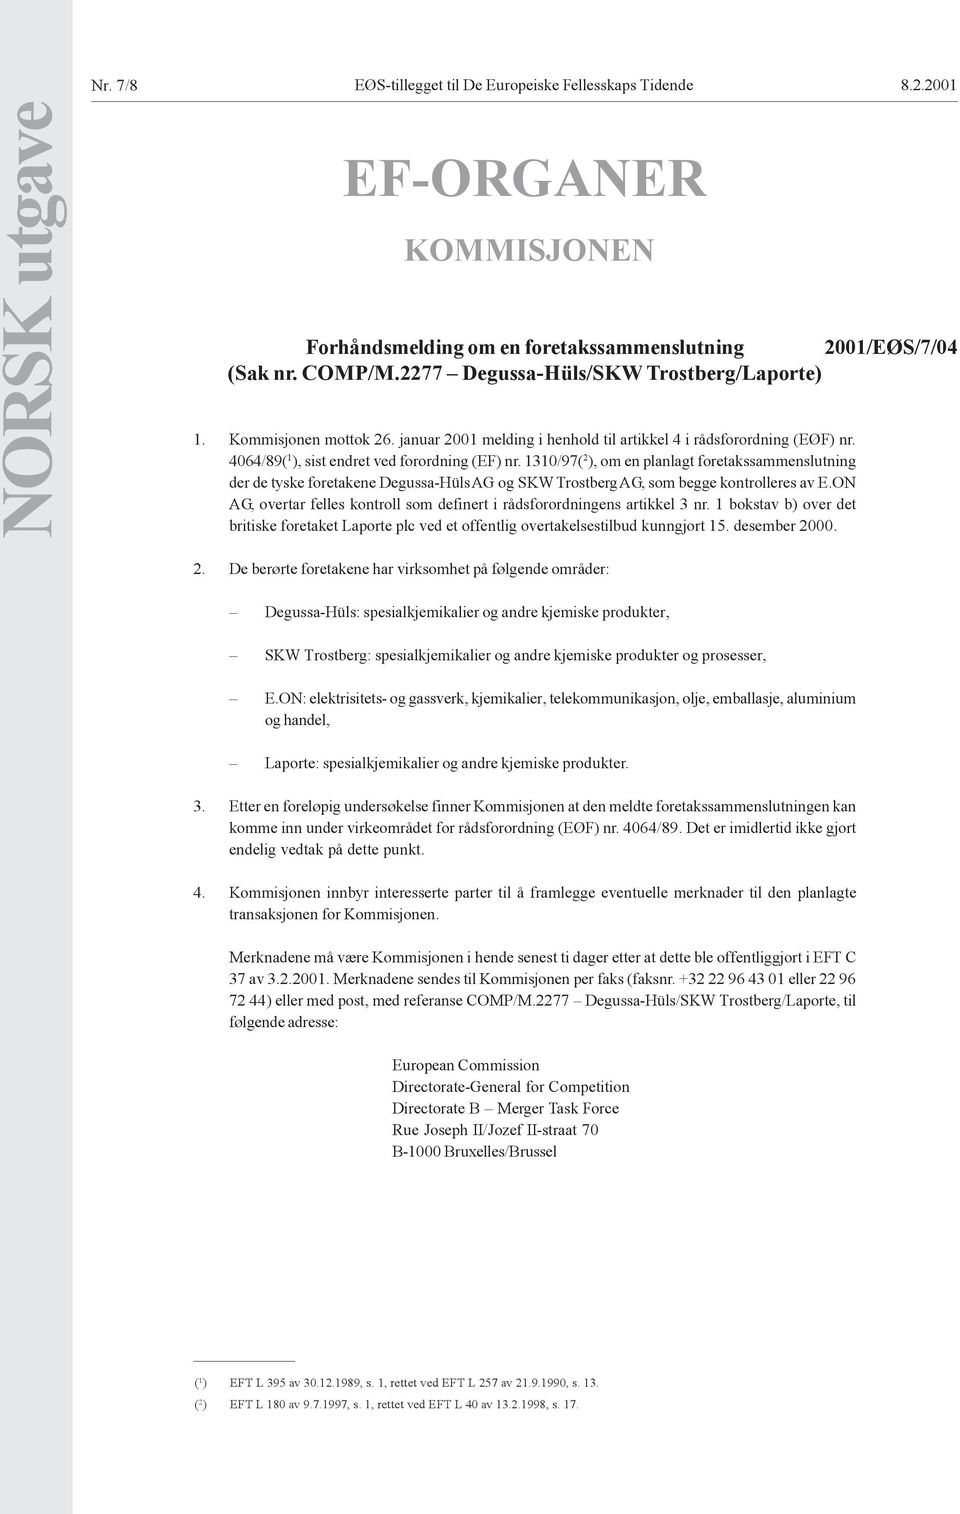 1310/97( 2 ), om en planlagt foretakssammenslutning der de tyske foretakene Degussa-Hüls AG og SKW Trostberg AG, som begge kontrolleres av E.